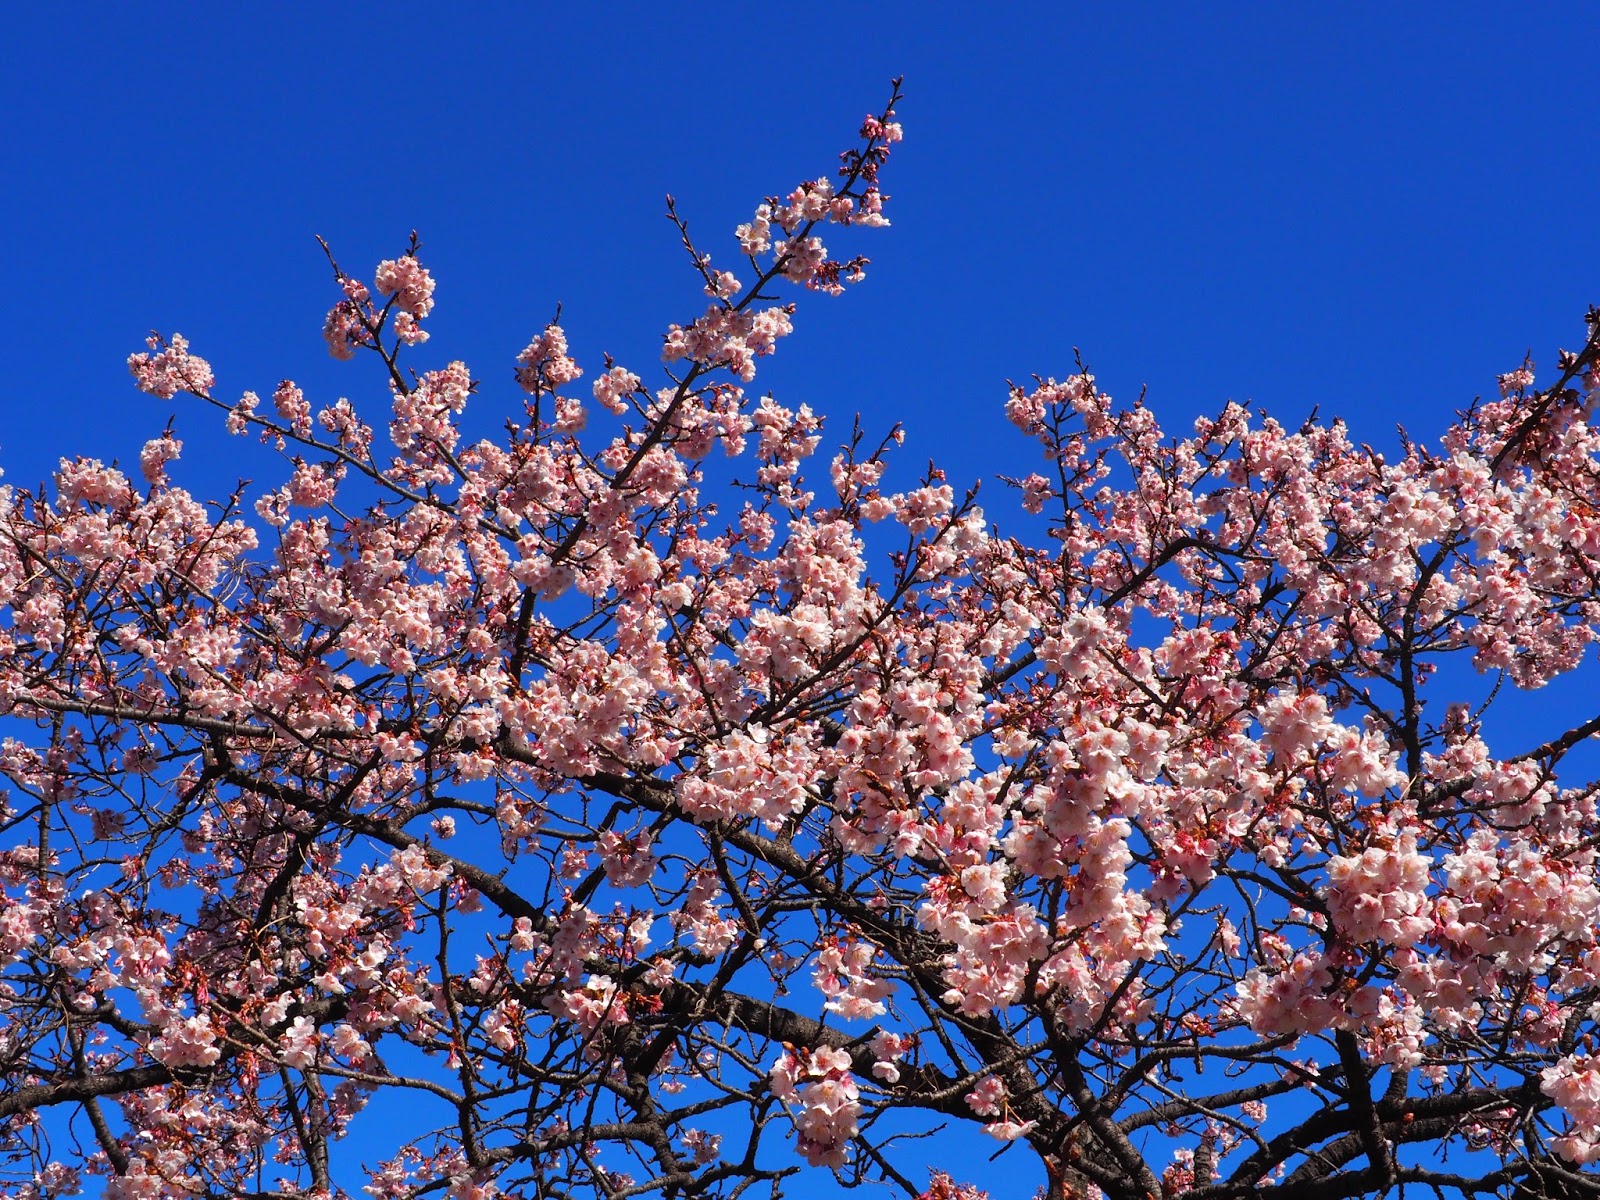 Shinjuku Gyoen National Garden cherry blossoms